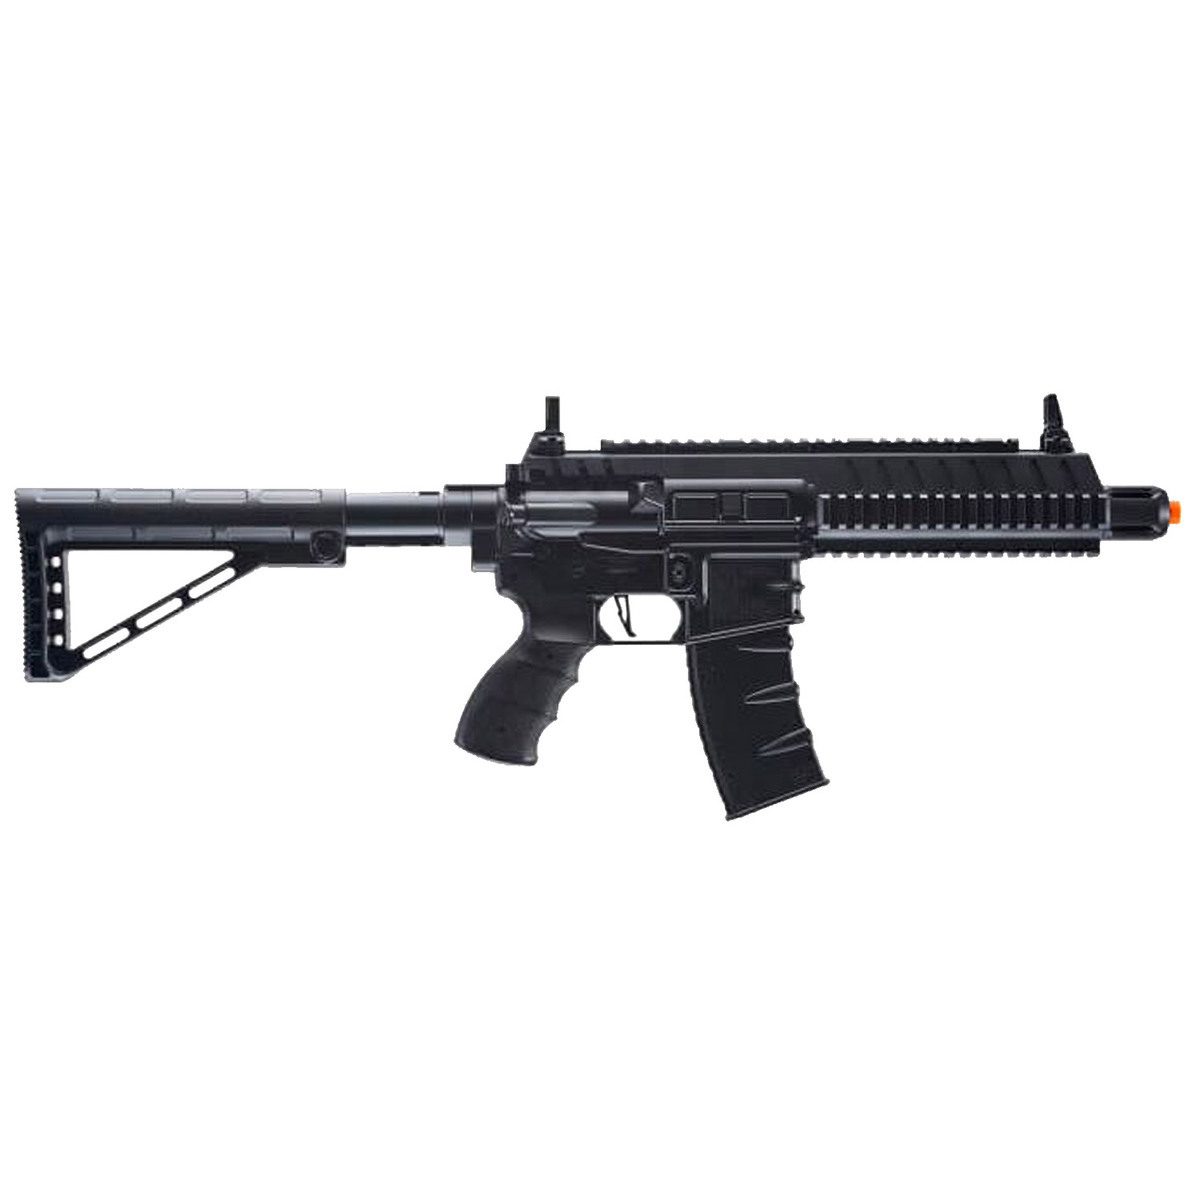 https://www.sportsmans.com/medias/umarex-tactical-force-cqb-6mm-airsoft-rifle-1653103-1.jpg?context=bWFzdGVyfGltYWdlc3w3MjQyNnxpbWFnZS9qcGVnfGltYWdlcy9oZTEvaGZiLzk4MTQ1NDkyNjY0NjIuanBnfDQ0MjhiNGY1YTgxNzY2ZTFkYzg3MGE5NDUwZGFiNjEzOWI4YTY2NTRkMmU5M2U1NTNmMjMwOTUxZjViY2MyODM